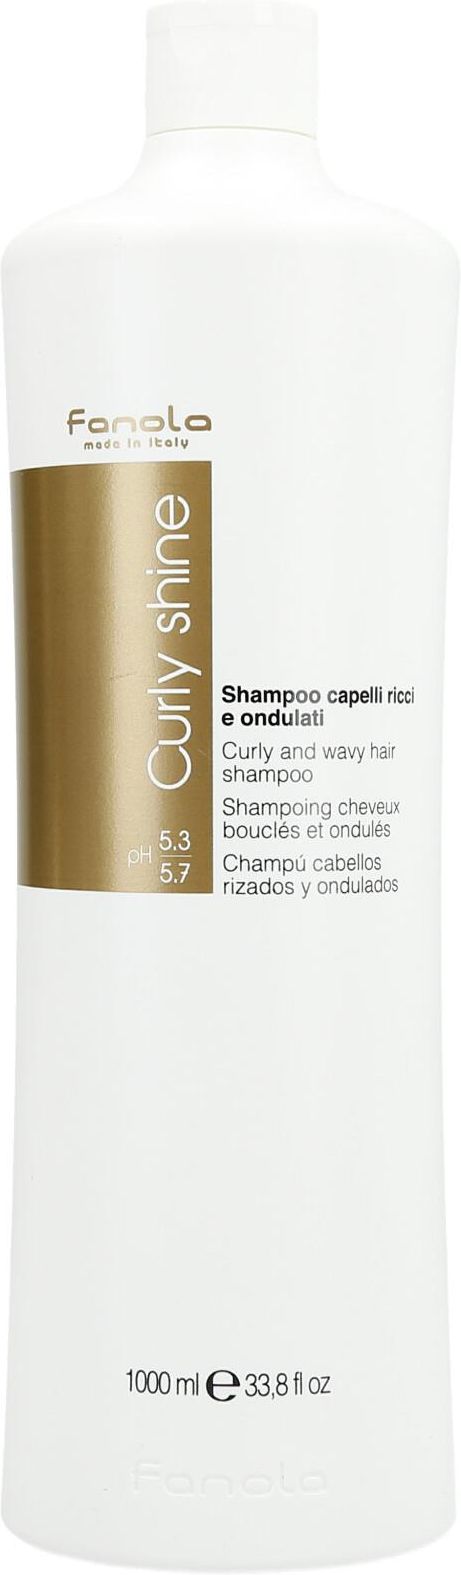 fanola curly shine szampon do włosów kręconych 1000ml